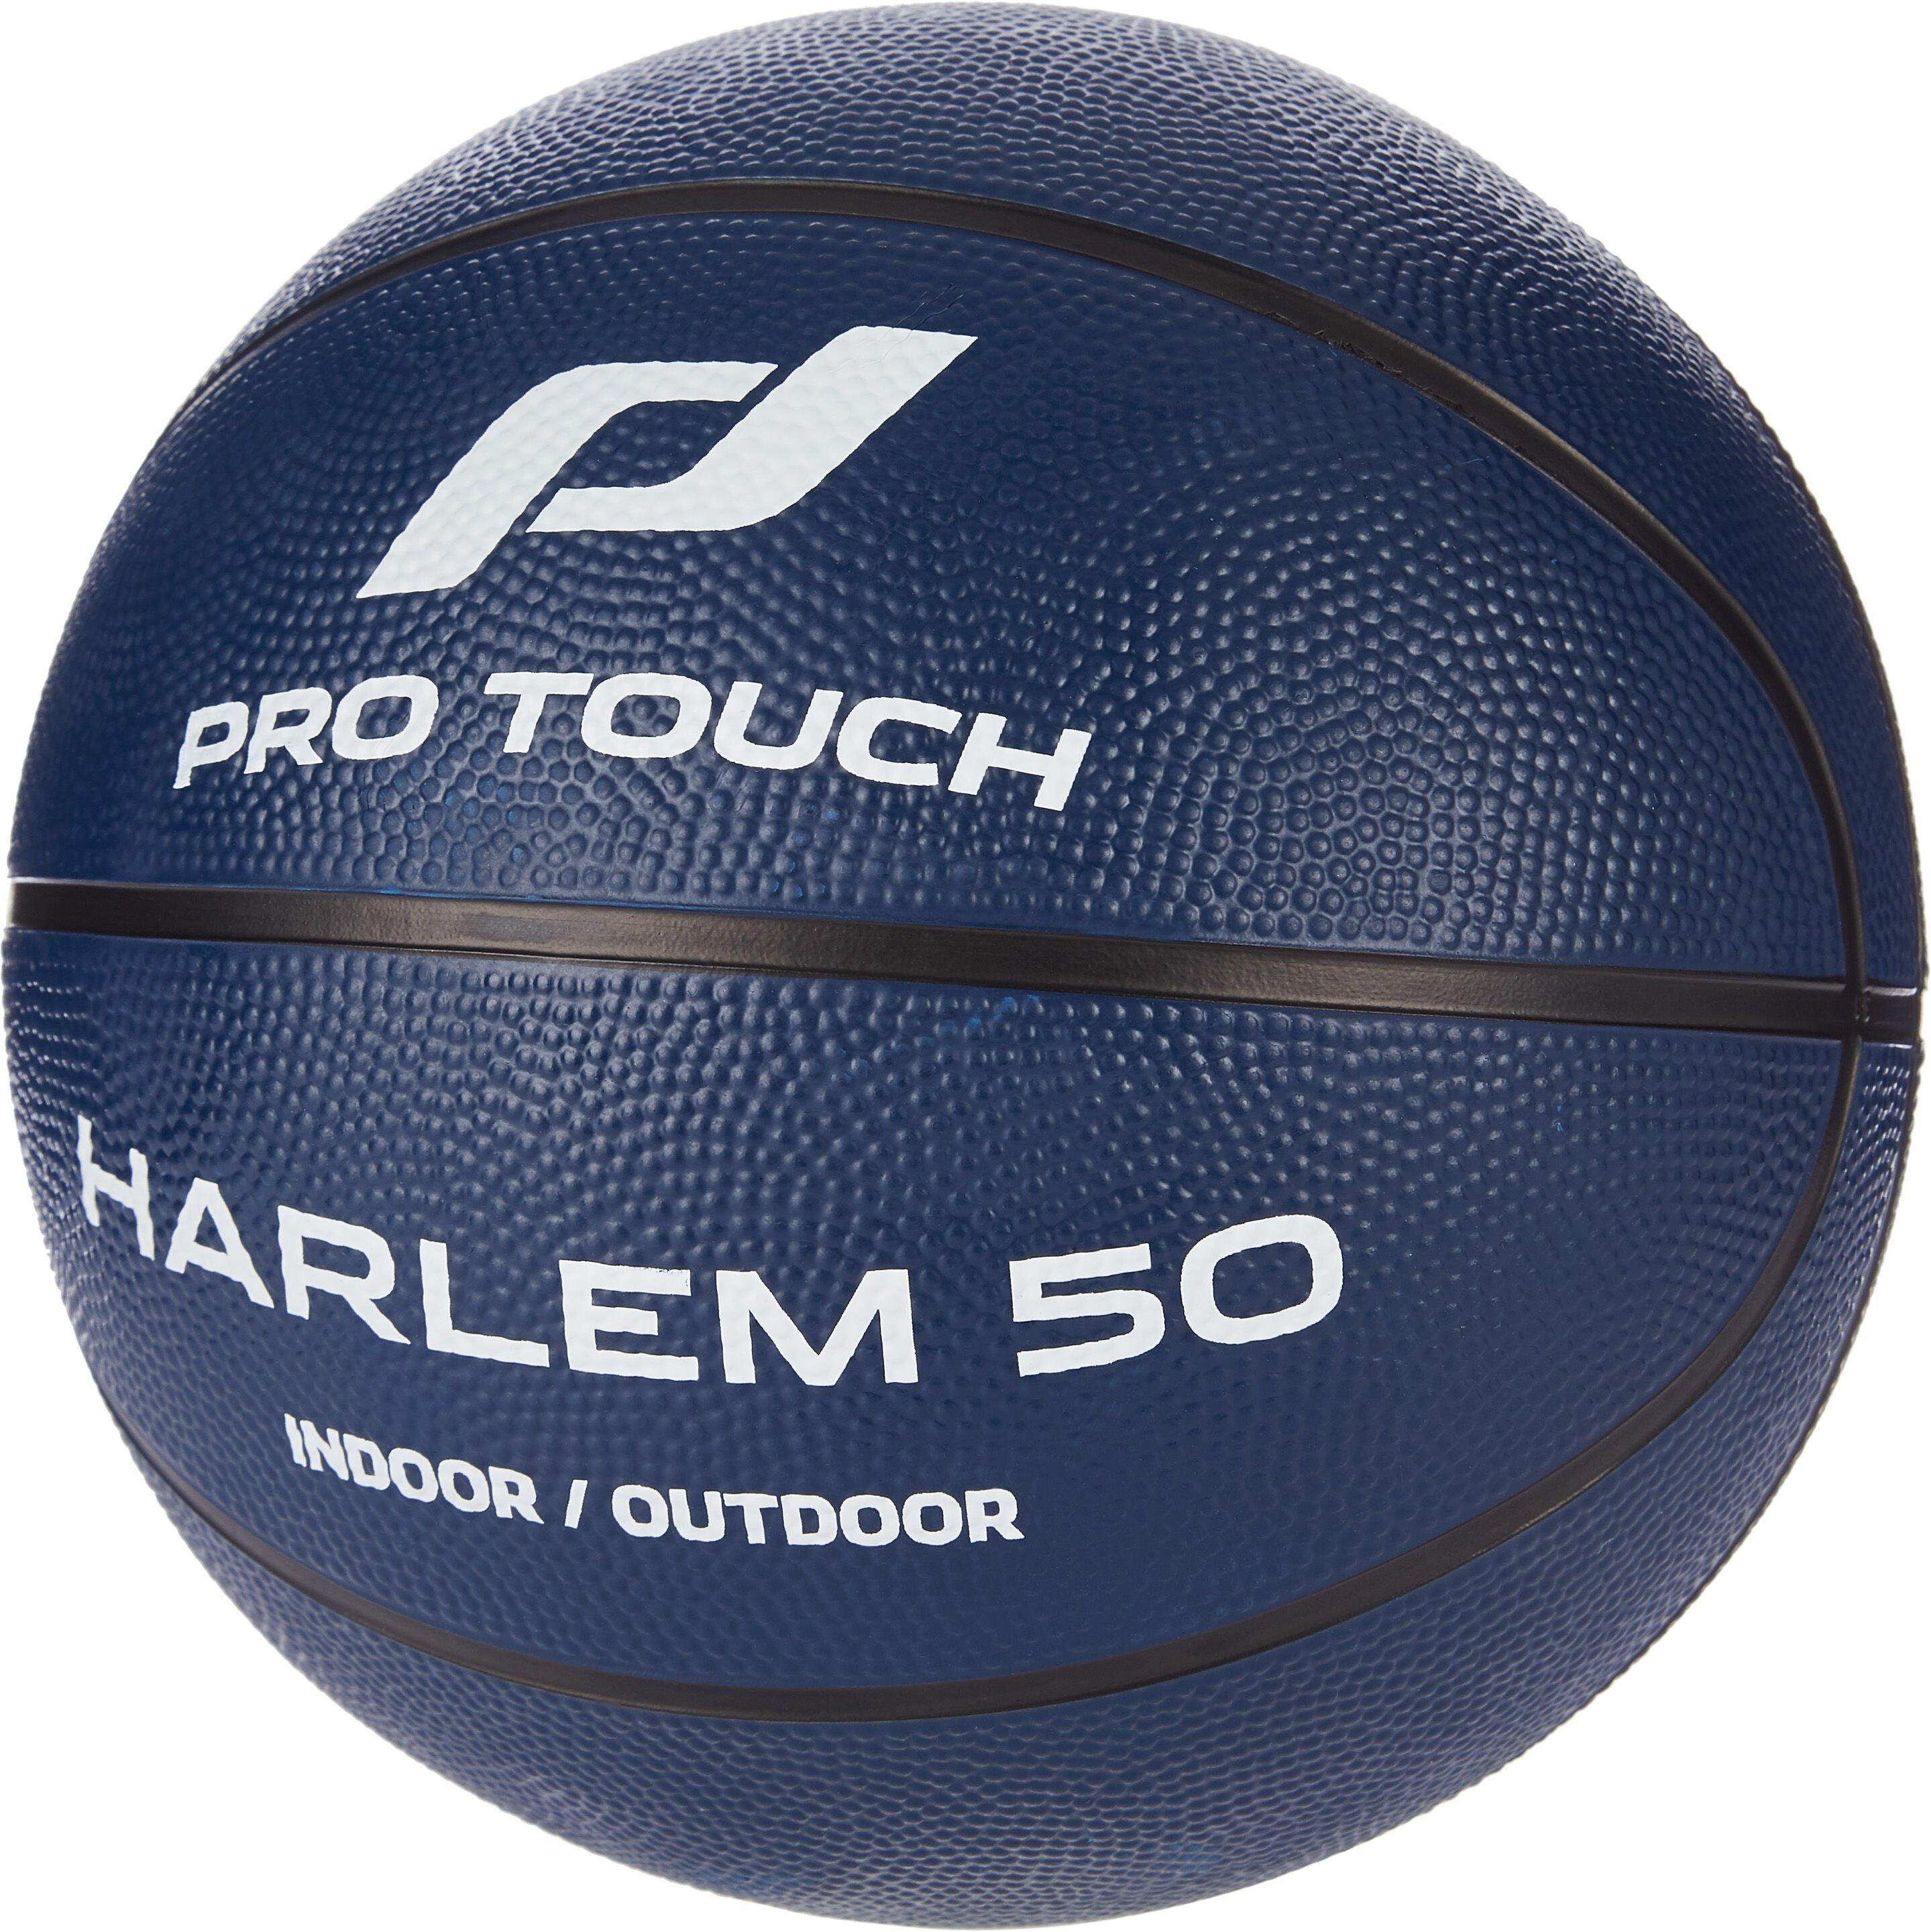 Pro Touch Harlem 50 Veľkosť: size: 5